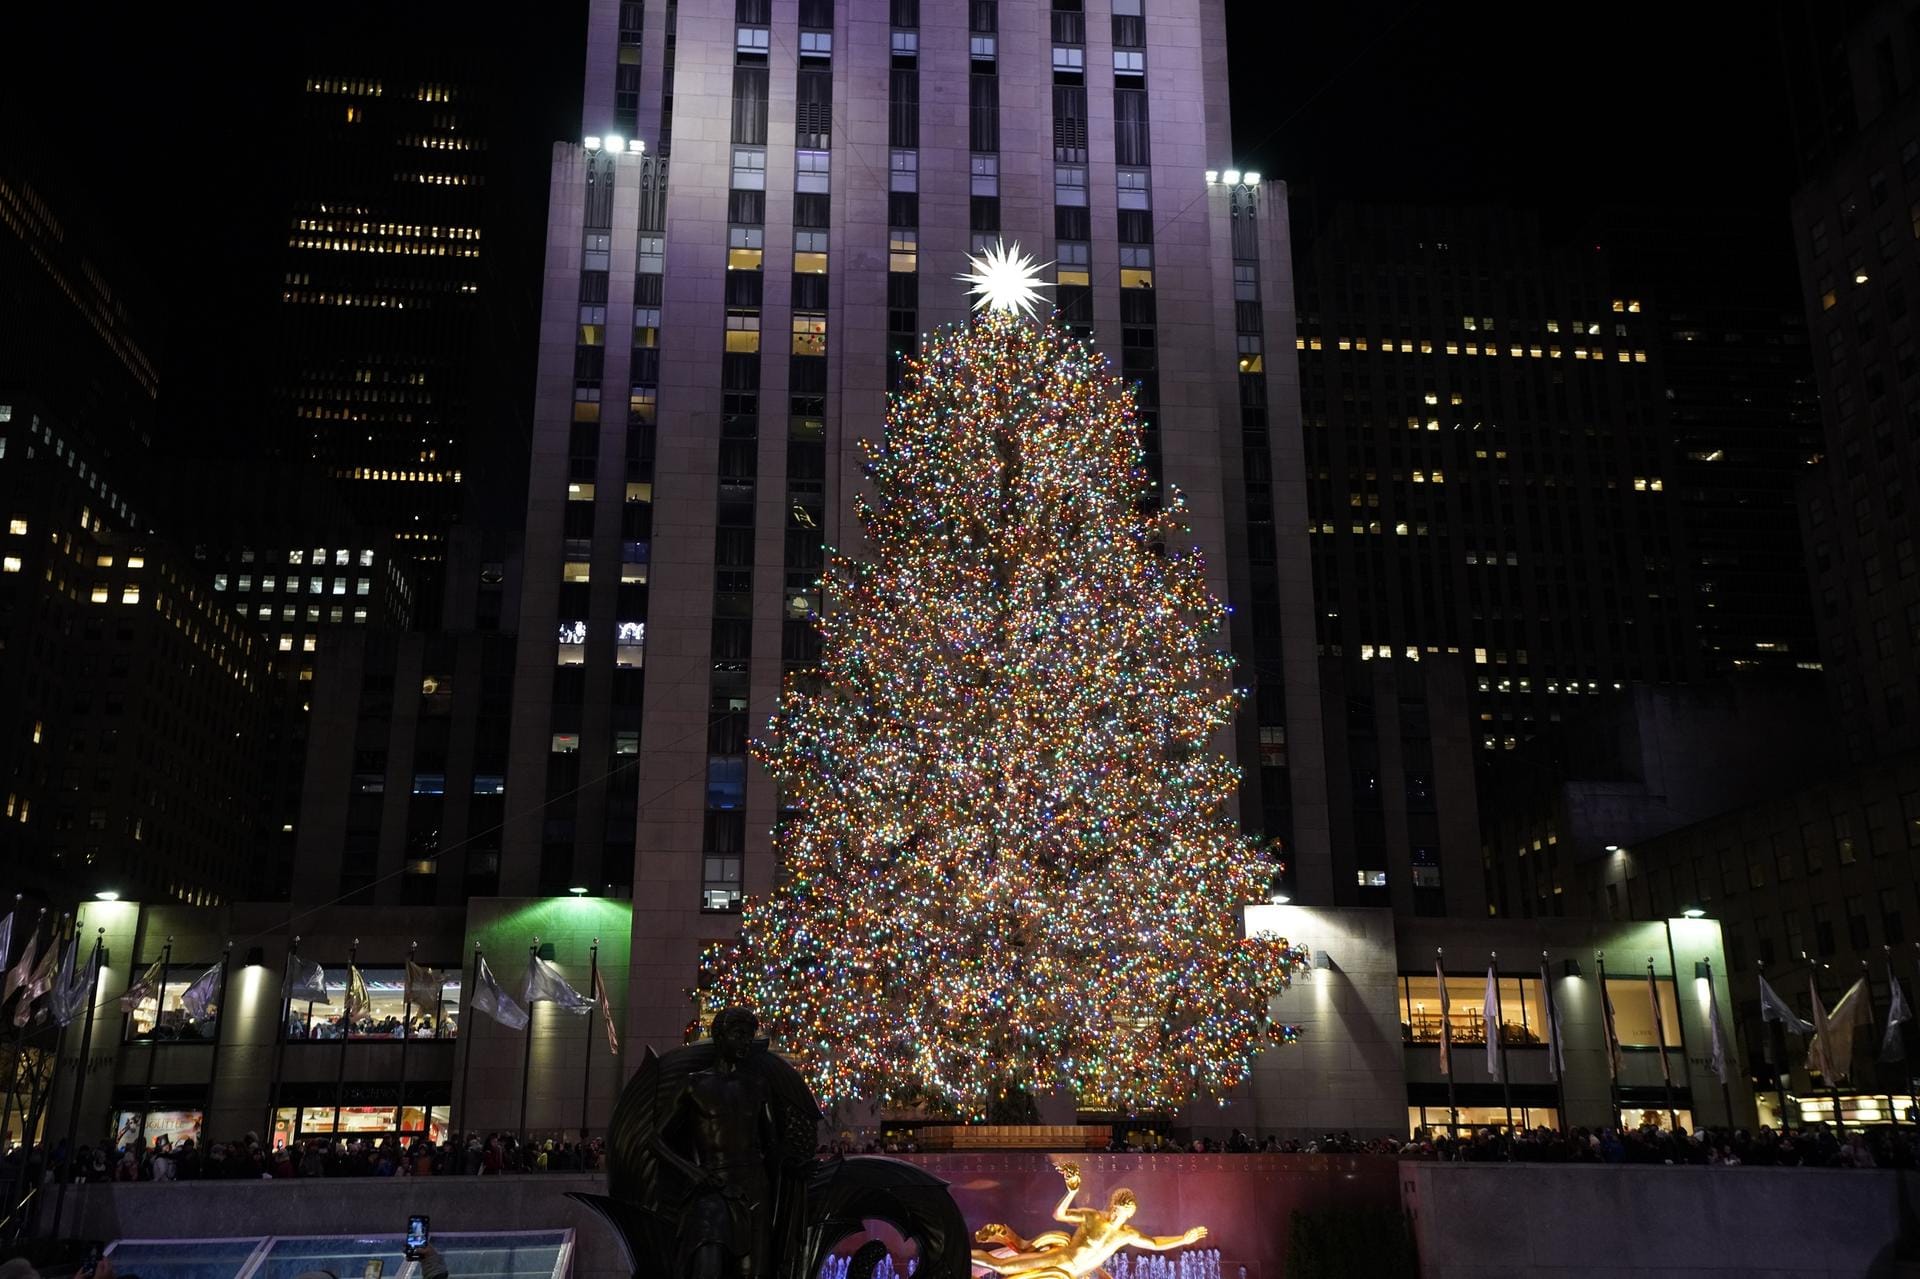 Weihnachtsbaum des Rockefeller Centers: Die Lichter des Baumes werden bei einer feierlichen Zeremonie angeschaltet.